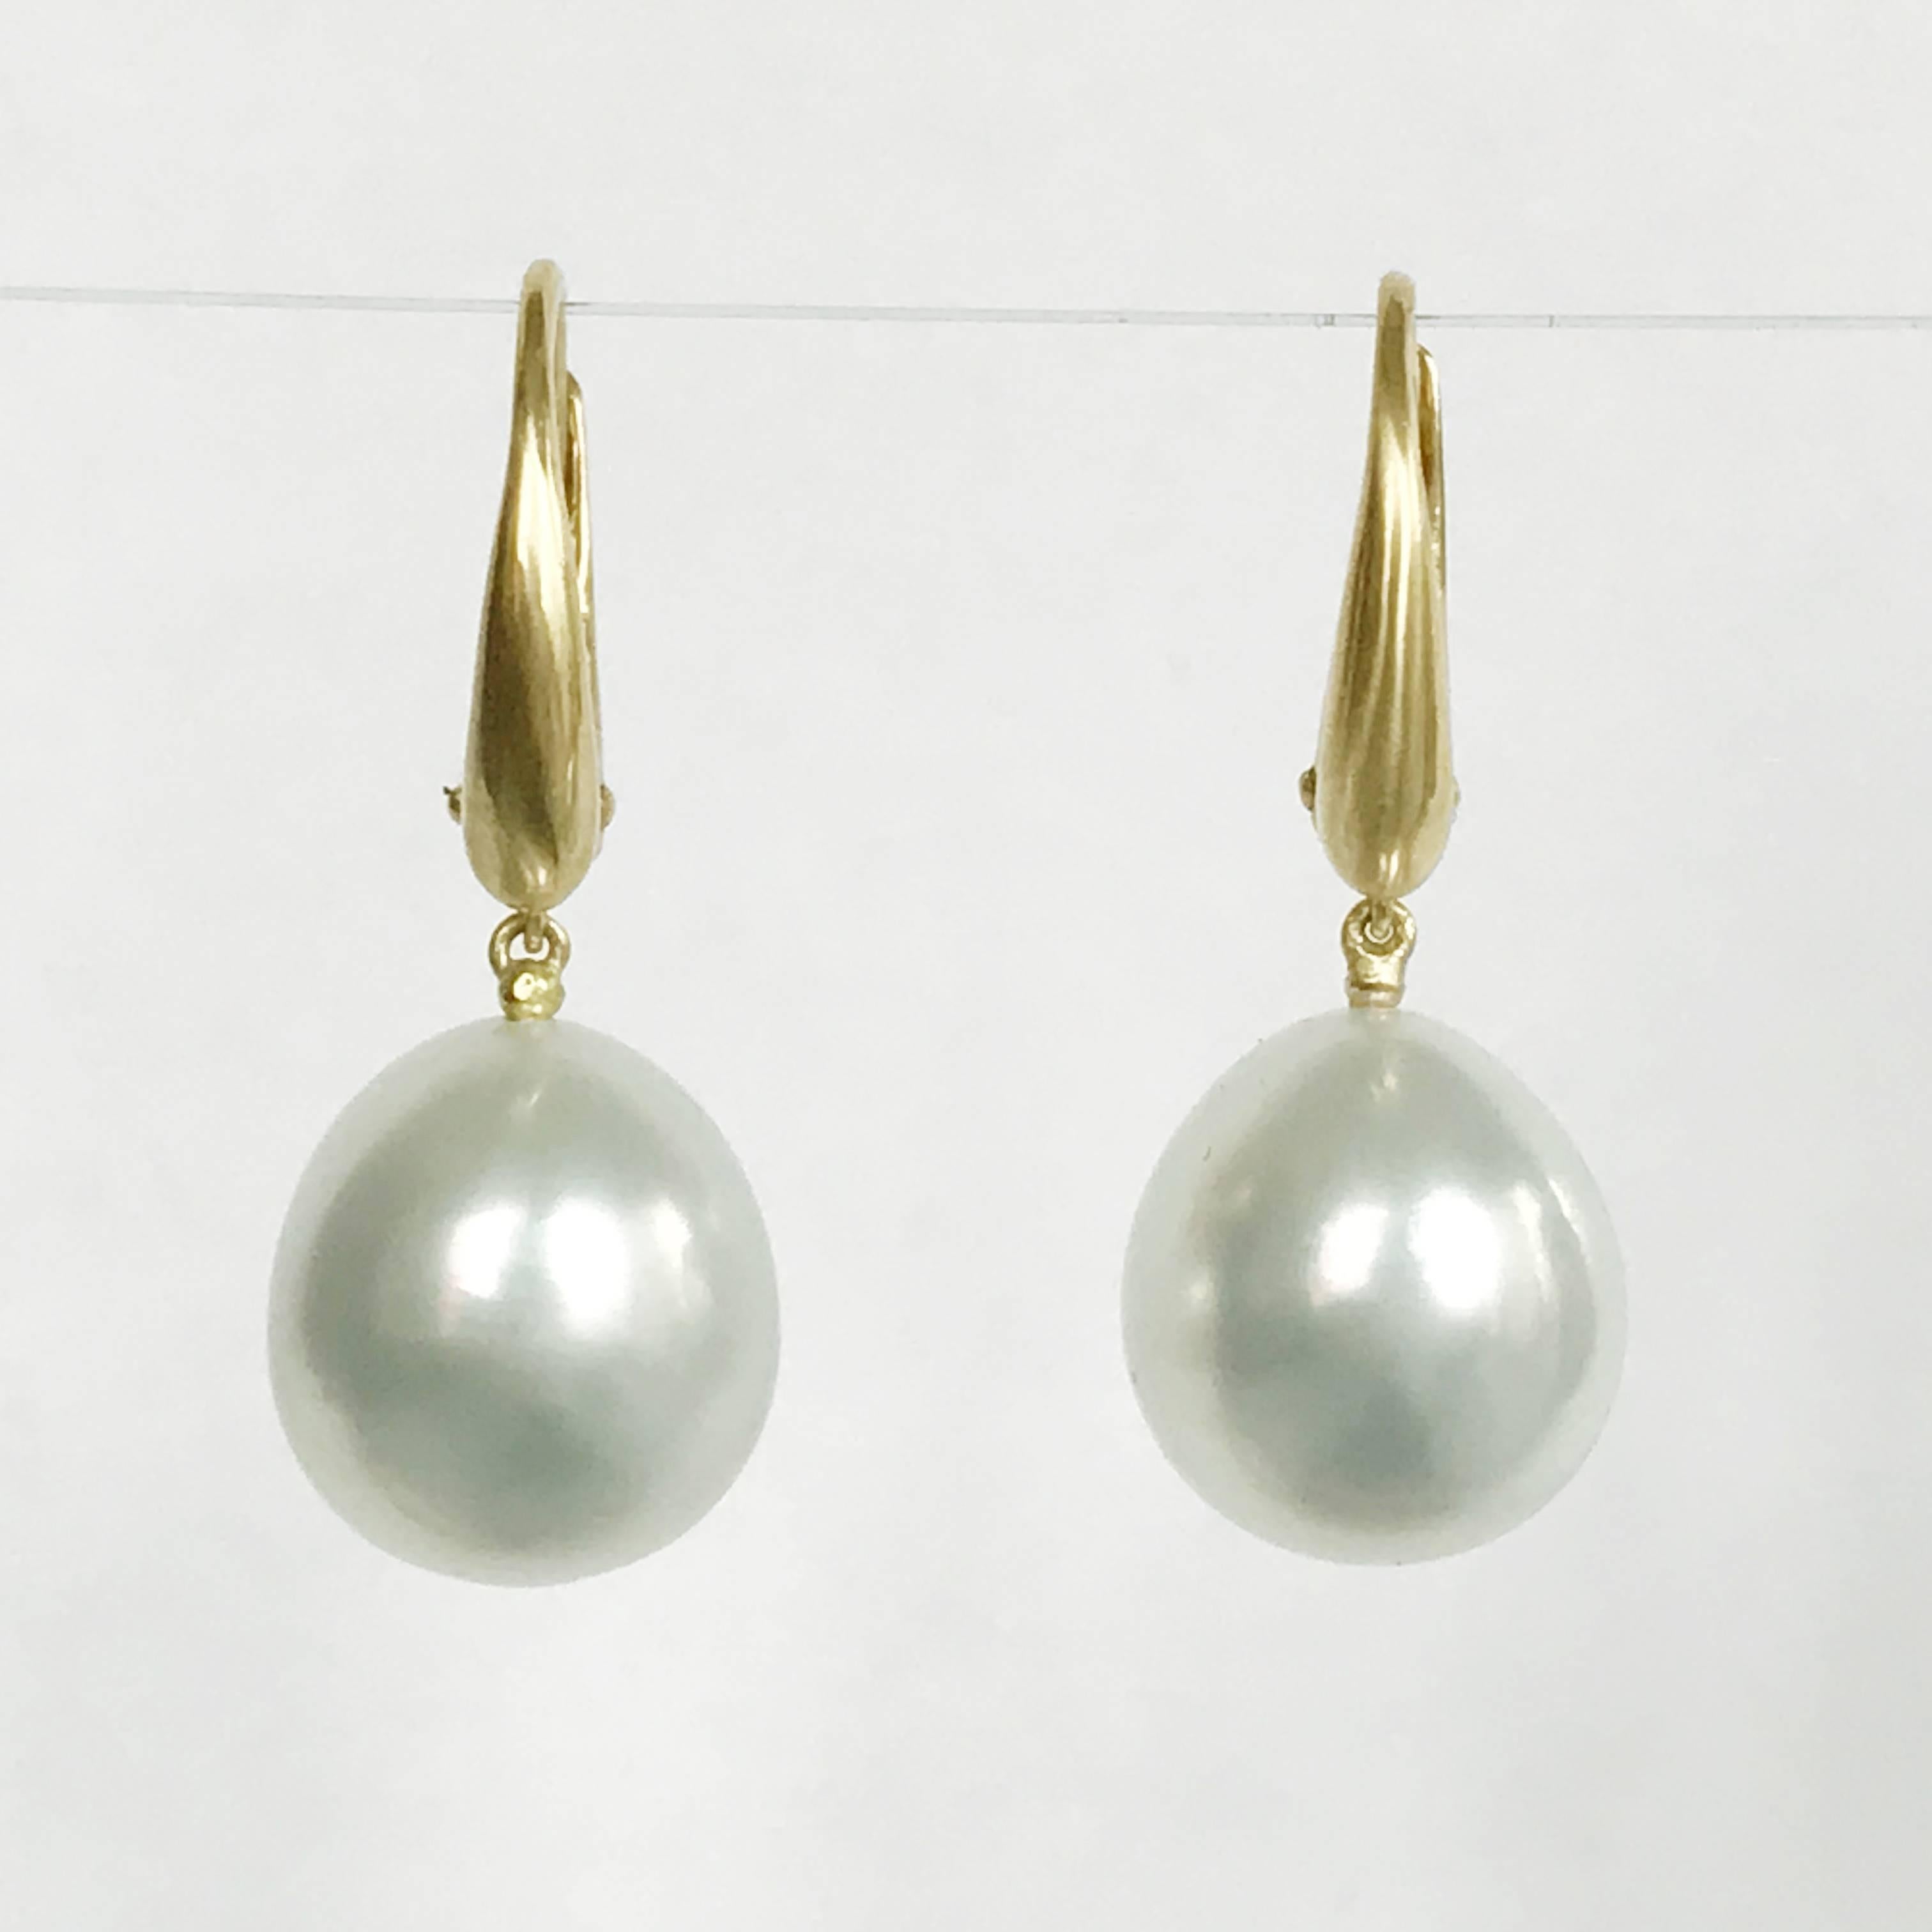 australian south sea pearl earrings